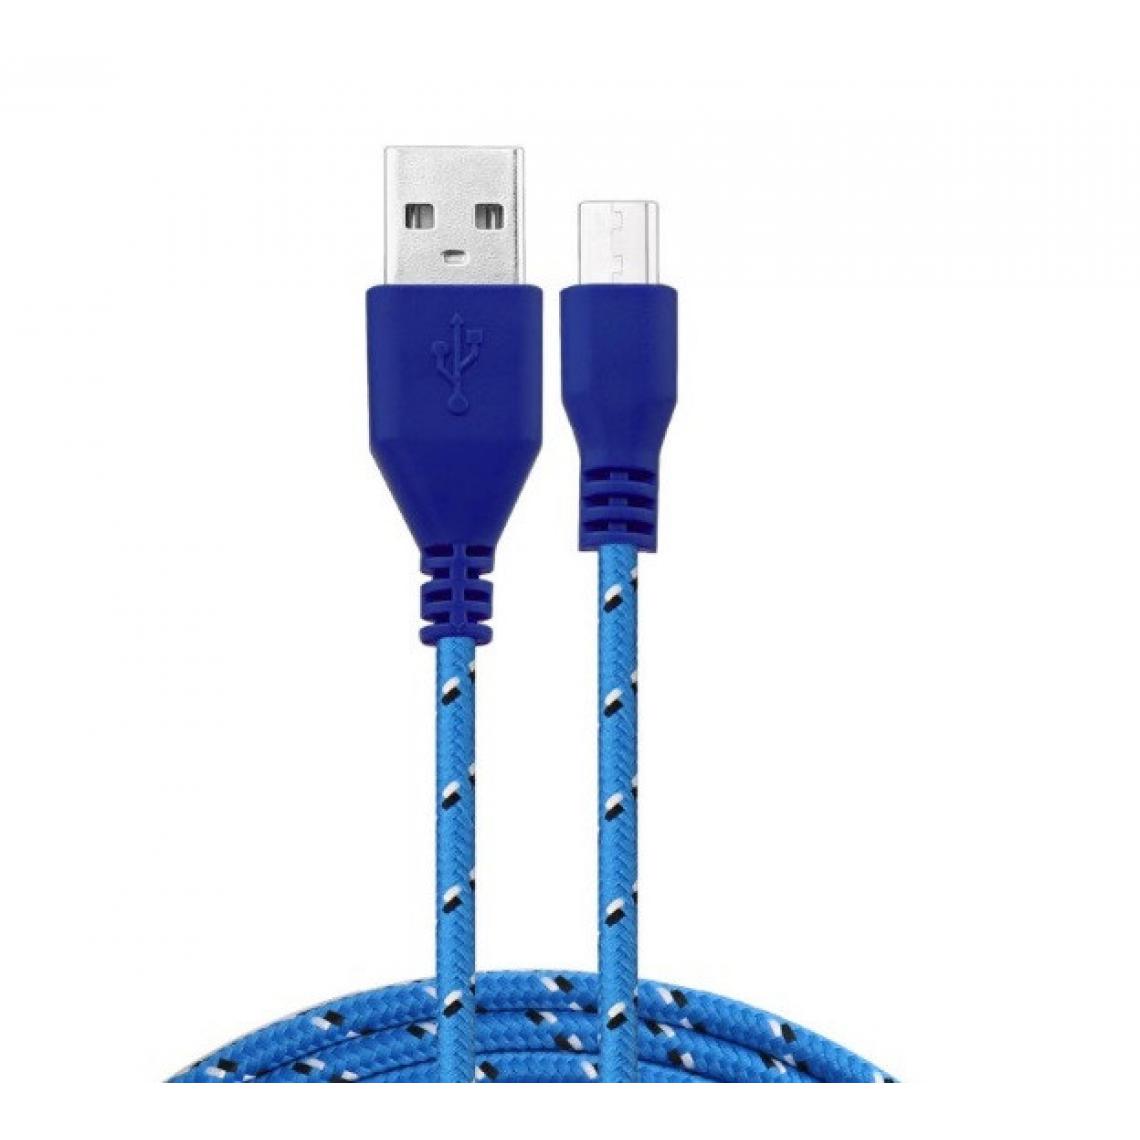 Shot - Cable Tresse 1m Micro USB pour Manette Playstation 4 PS4 Smartphone Android Chargeur USB Lacet Fil Nylon (BLEU) - Joystick